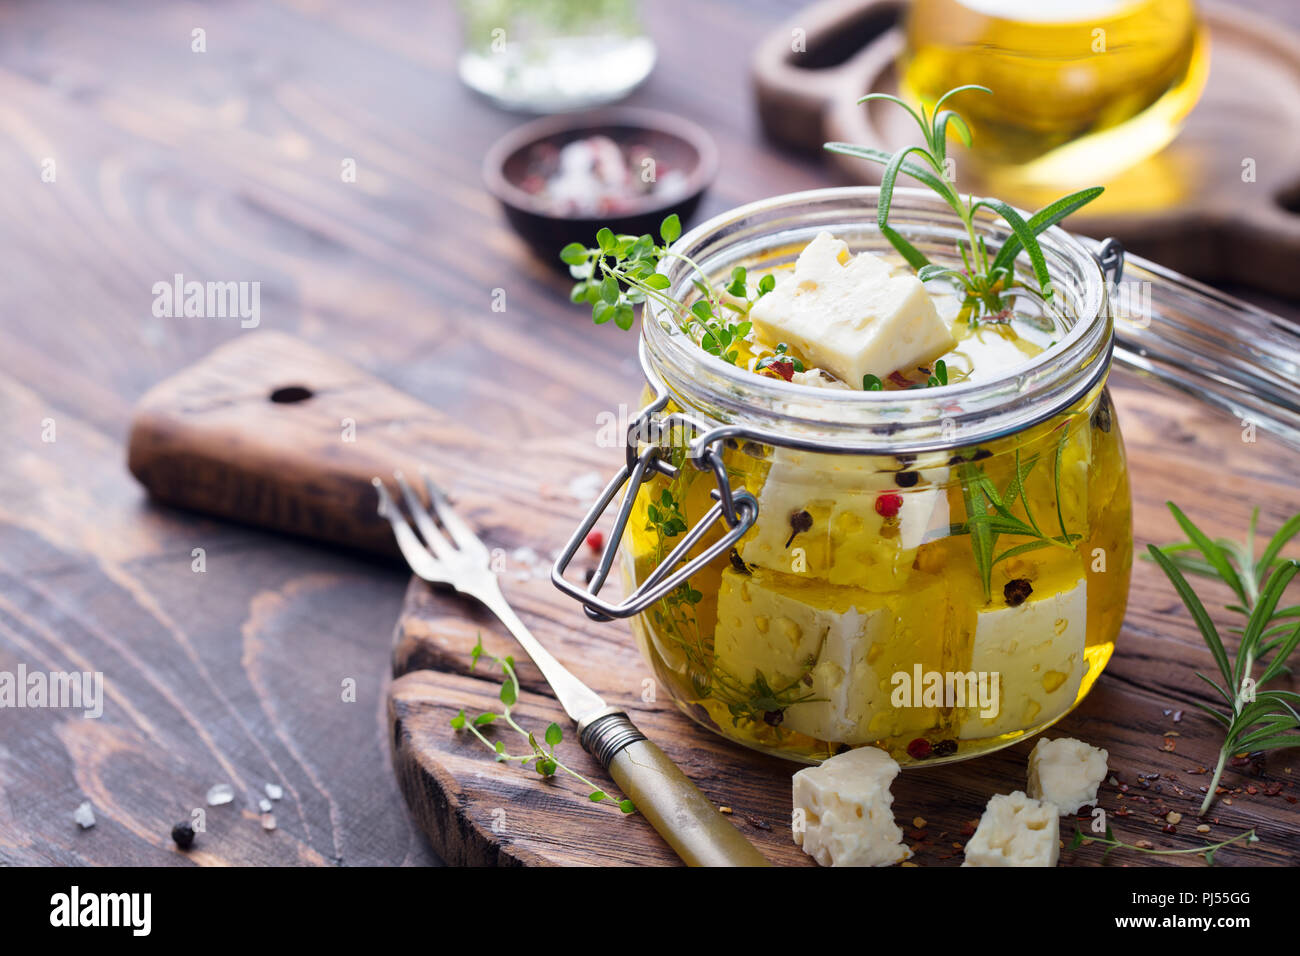 Le fromage Feta mariné à l'huile d'olive avec des herbes fraîches dans un bocal en verre. Fond de bois. Copier l'espace. Banque D'Images